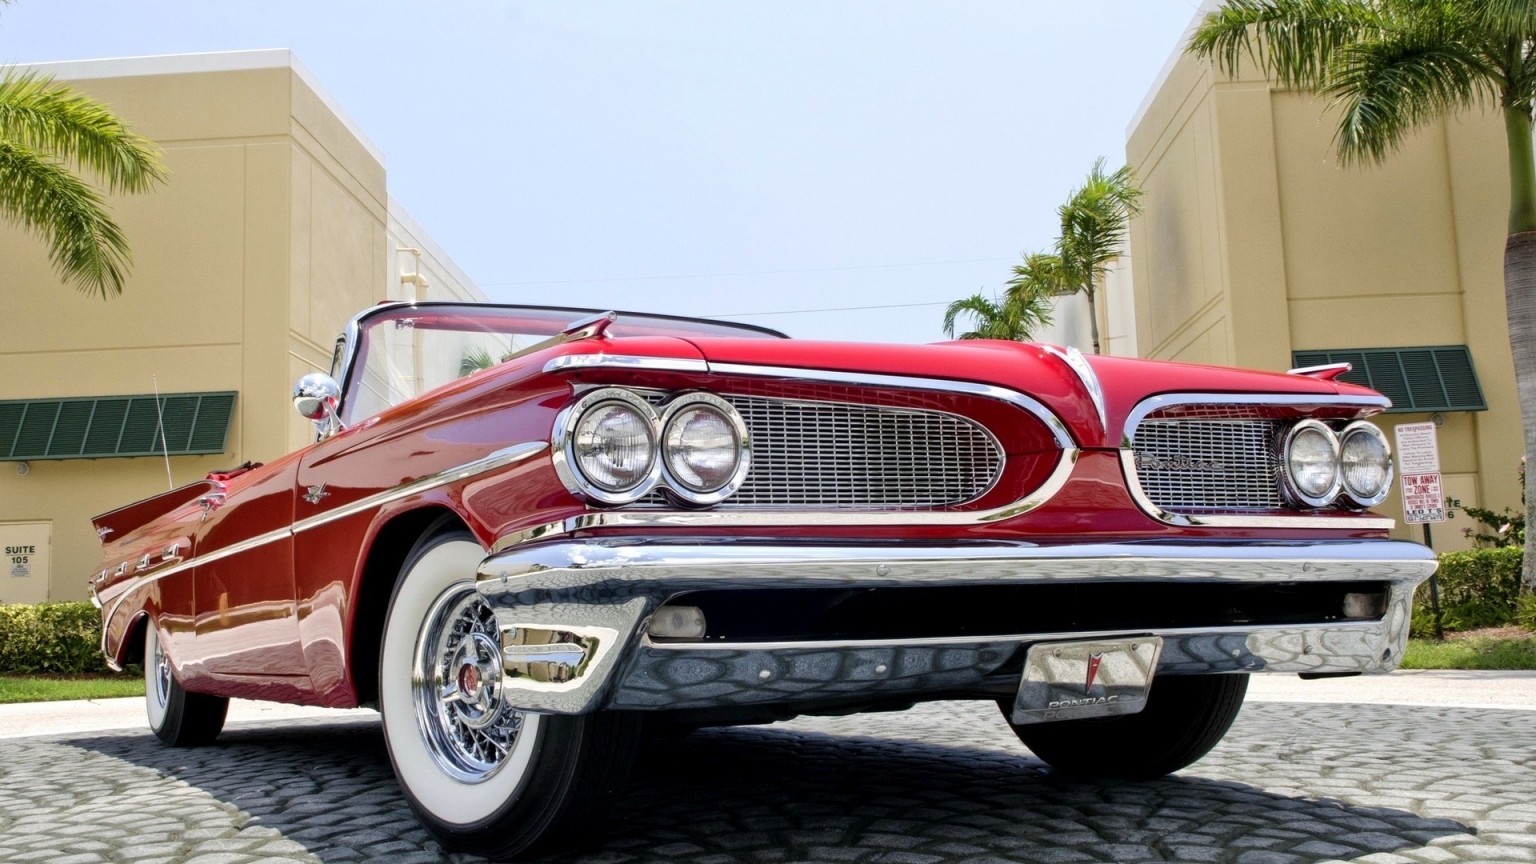 1959 Red Pontiac Cabrio for 1536 x 864 HDTV resolution